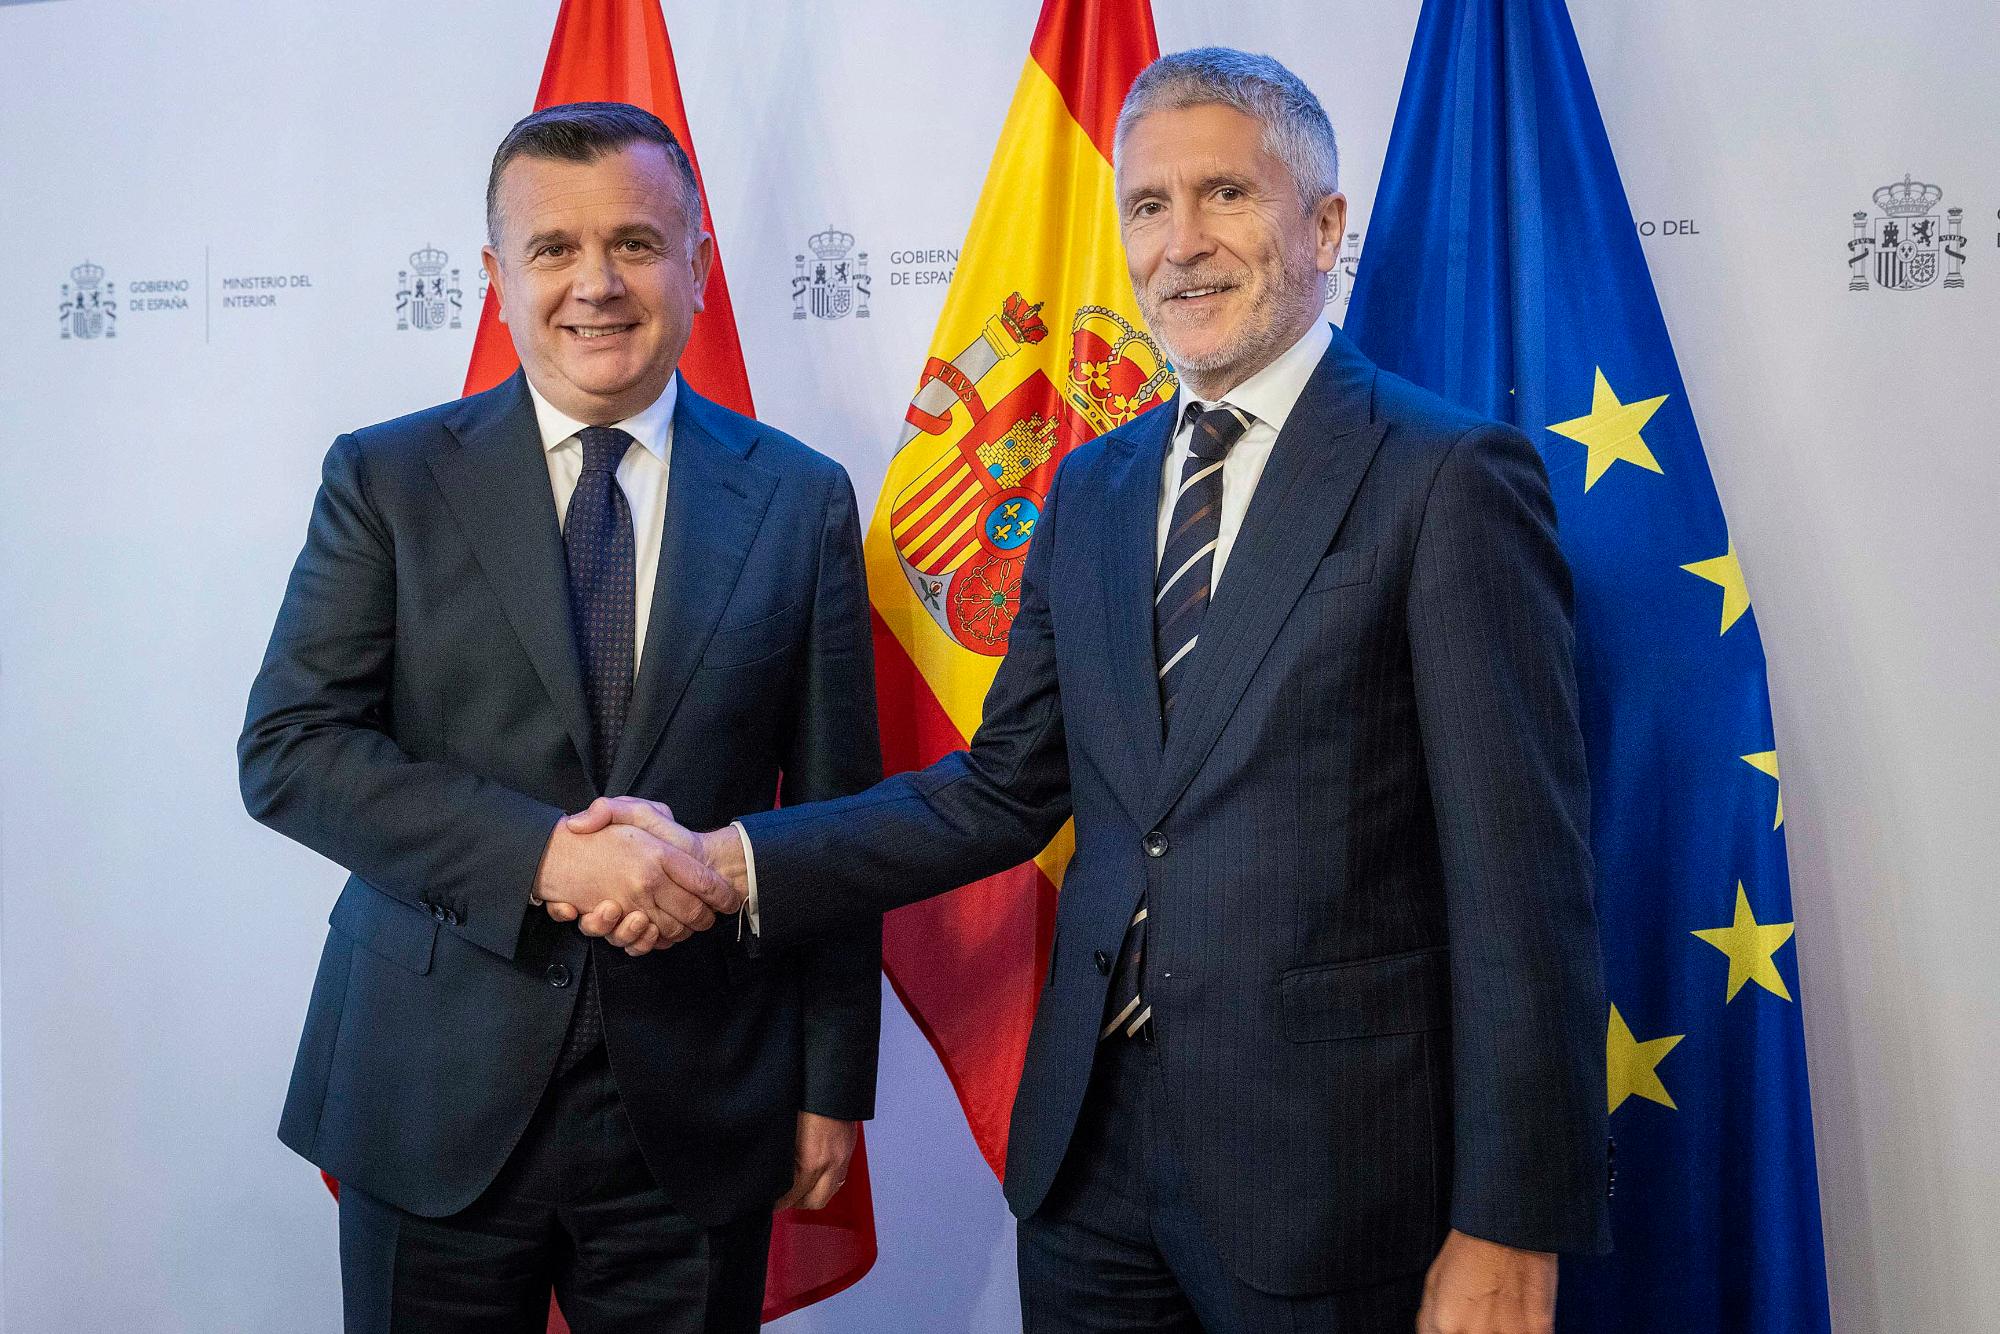 El ministro del Interior, Fernando Grande-Marlaska, y su homólogo albanés, Taulant Balla, dándose la mano.